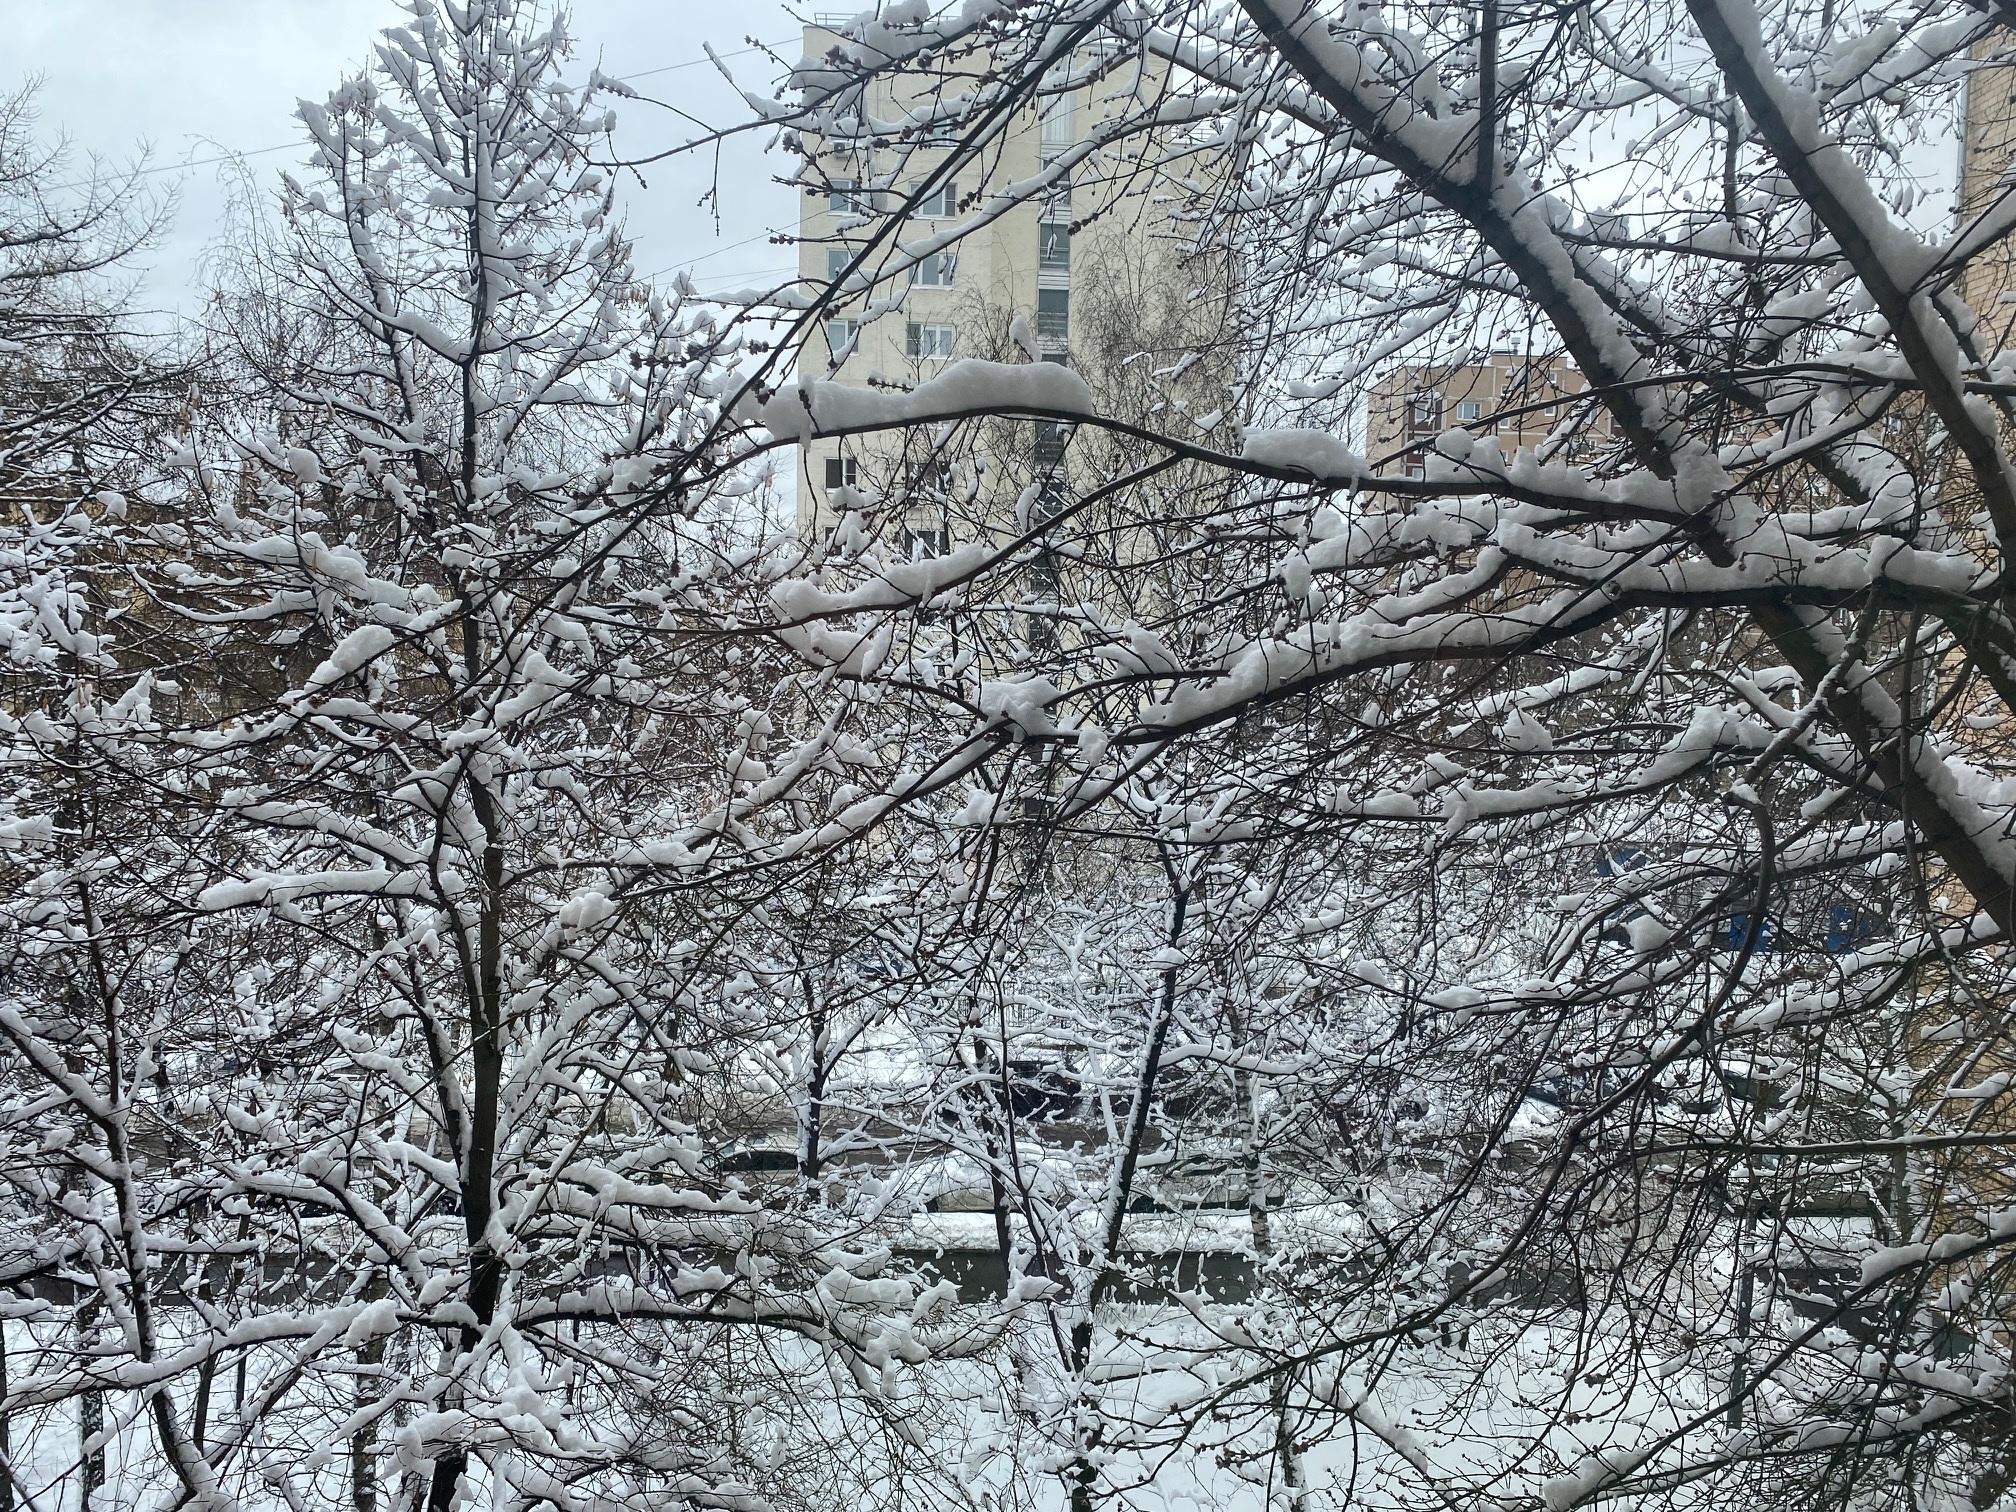 В метеообсерватории МГУ зафиксирована рекордная высота снежного покрова